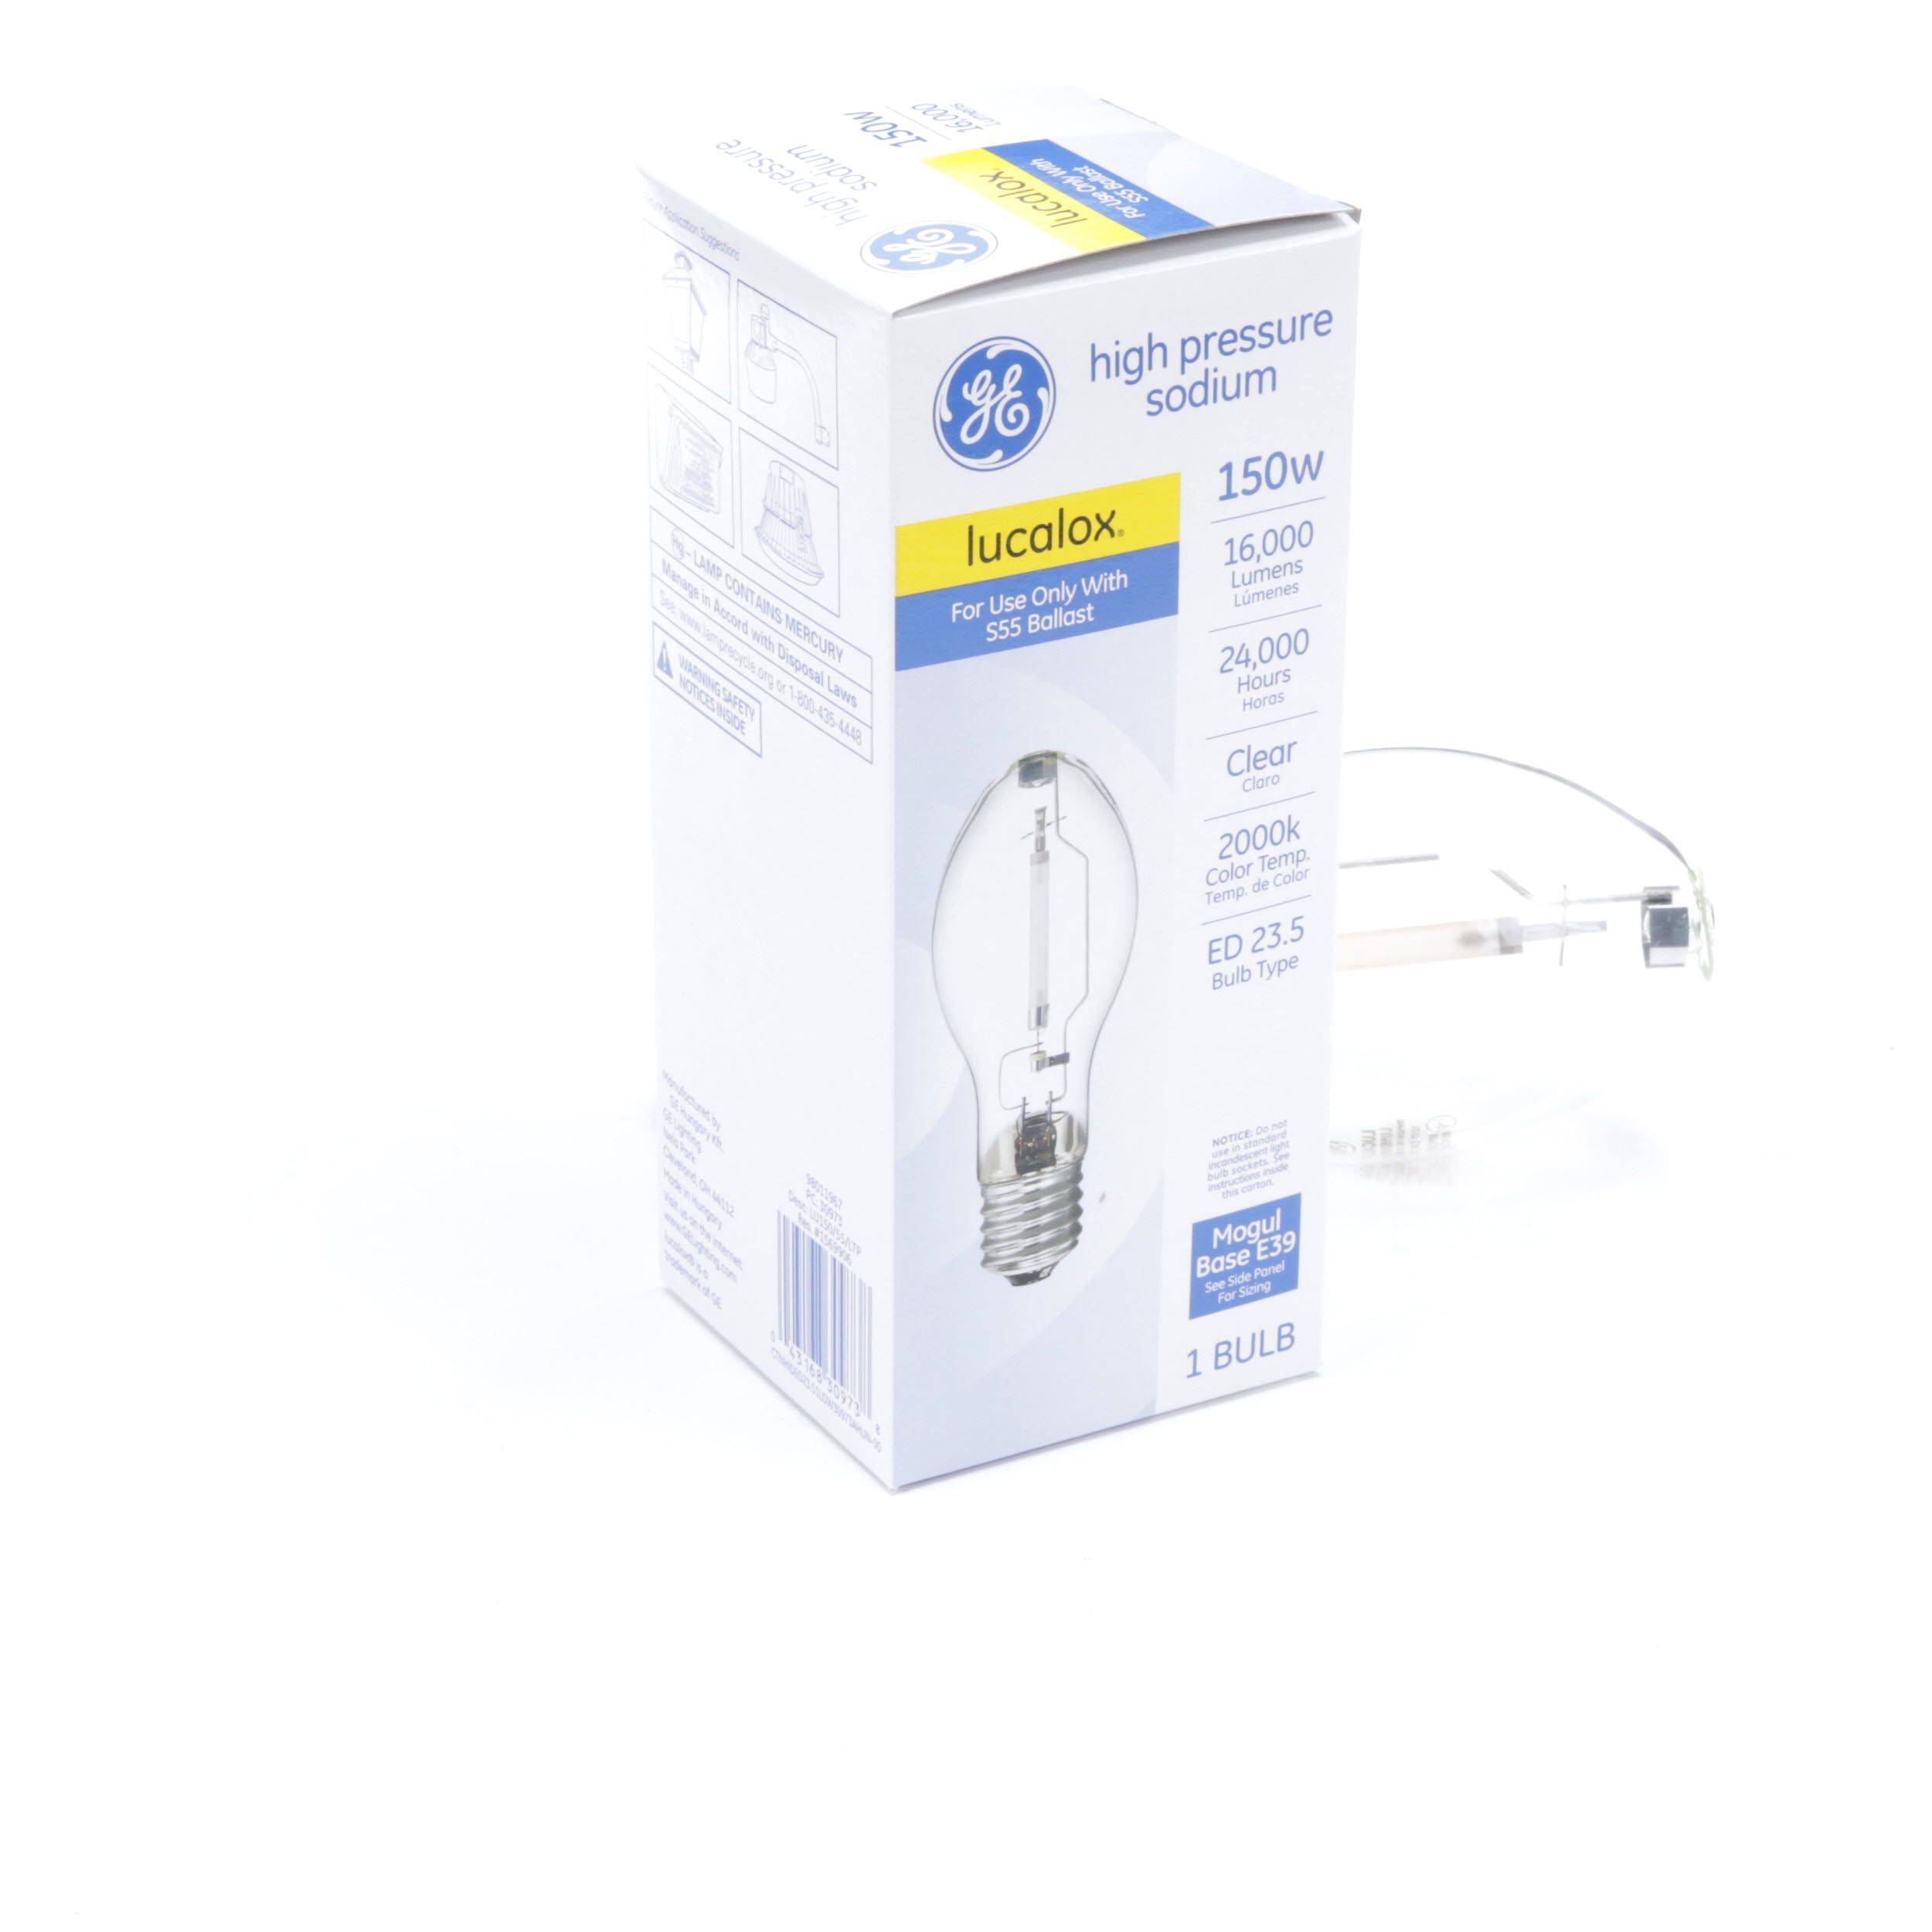 GE High Pressure Sodium 150 Watt Lucalox Lamp Light Bulb PC 30973 E39 for sale online